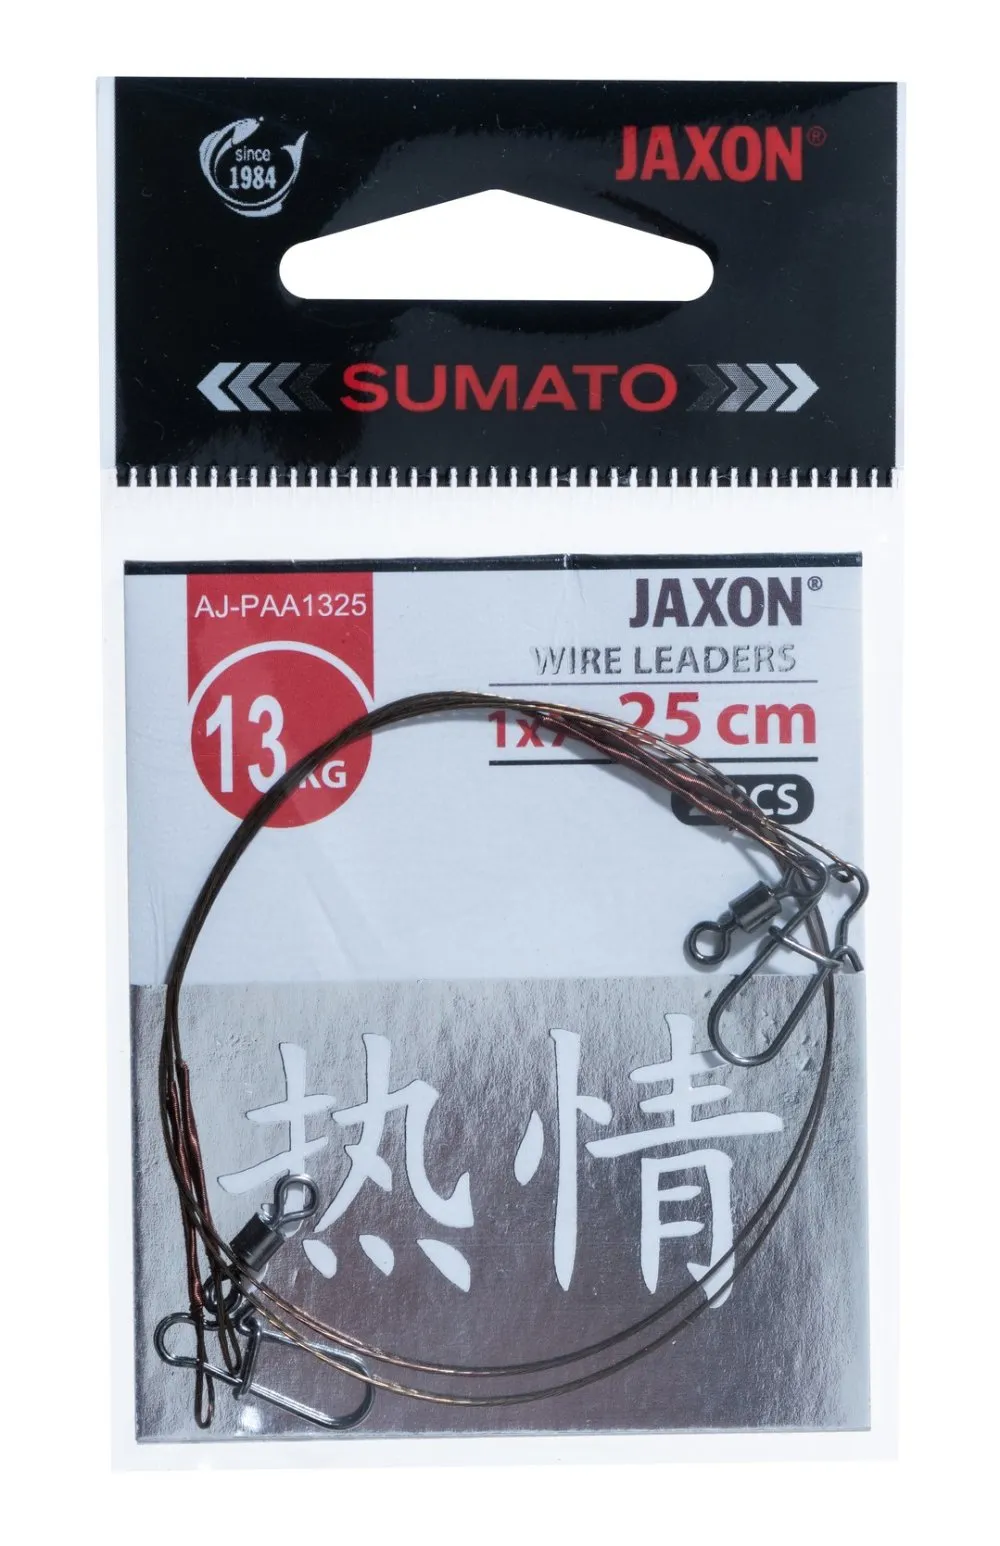 JAXON SUMATO WIRE LEADERS 9kg 20cm